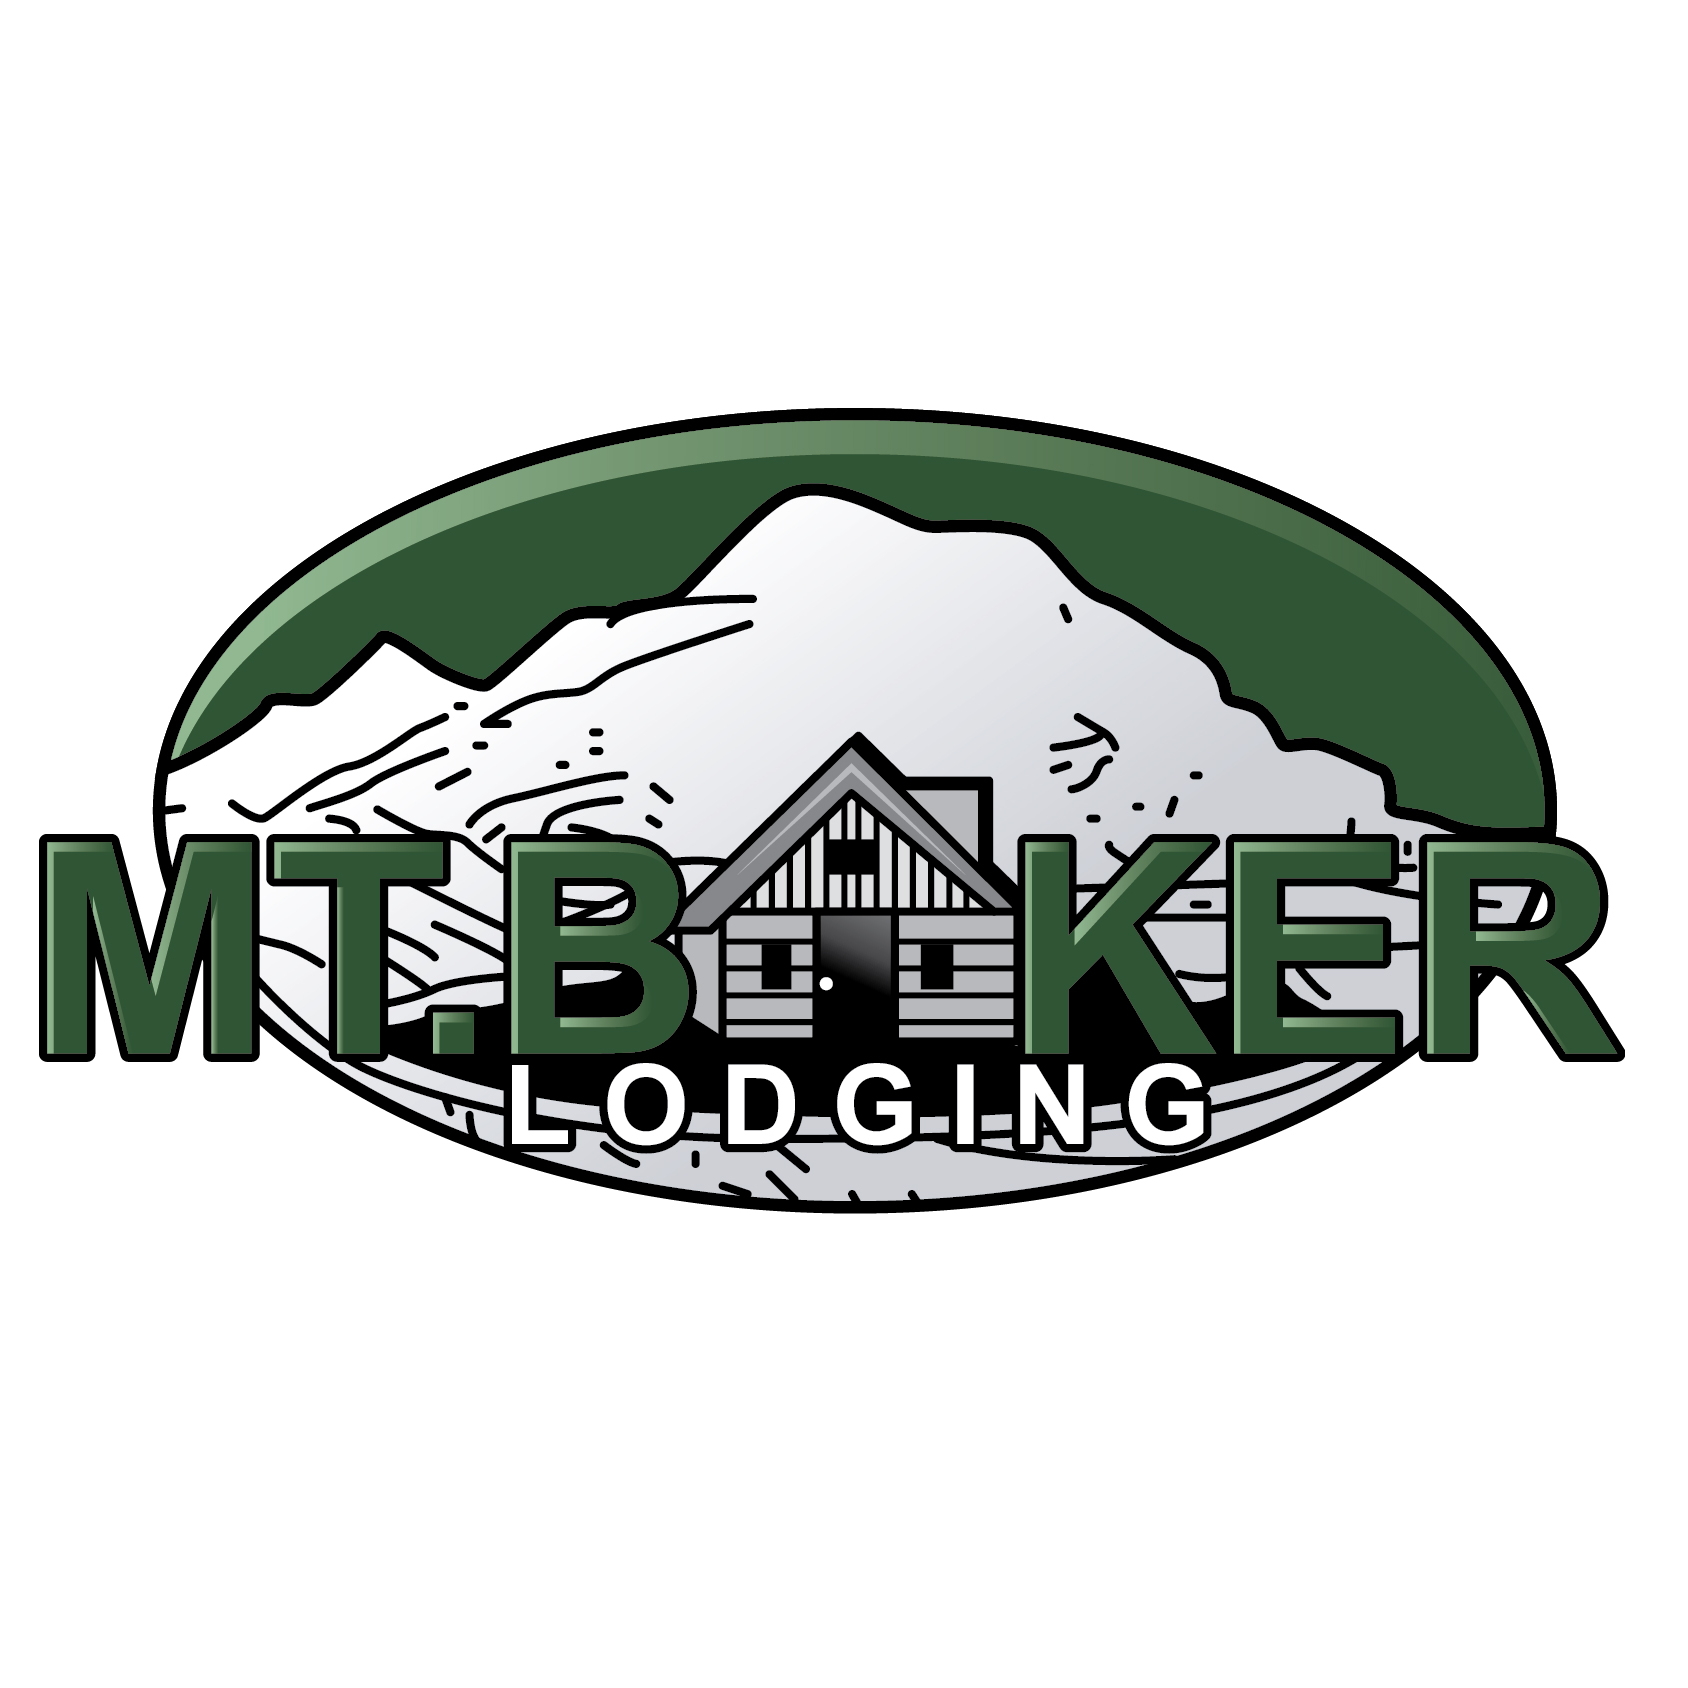 Mt. Baker Lodging Condo #33SW – FIREPLACE, WIFI, SLEEPS 4!